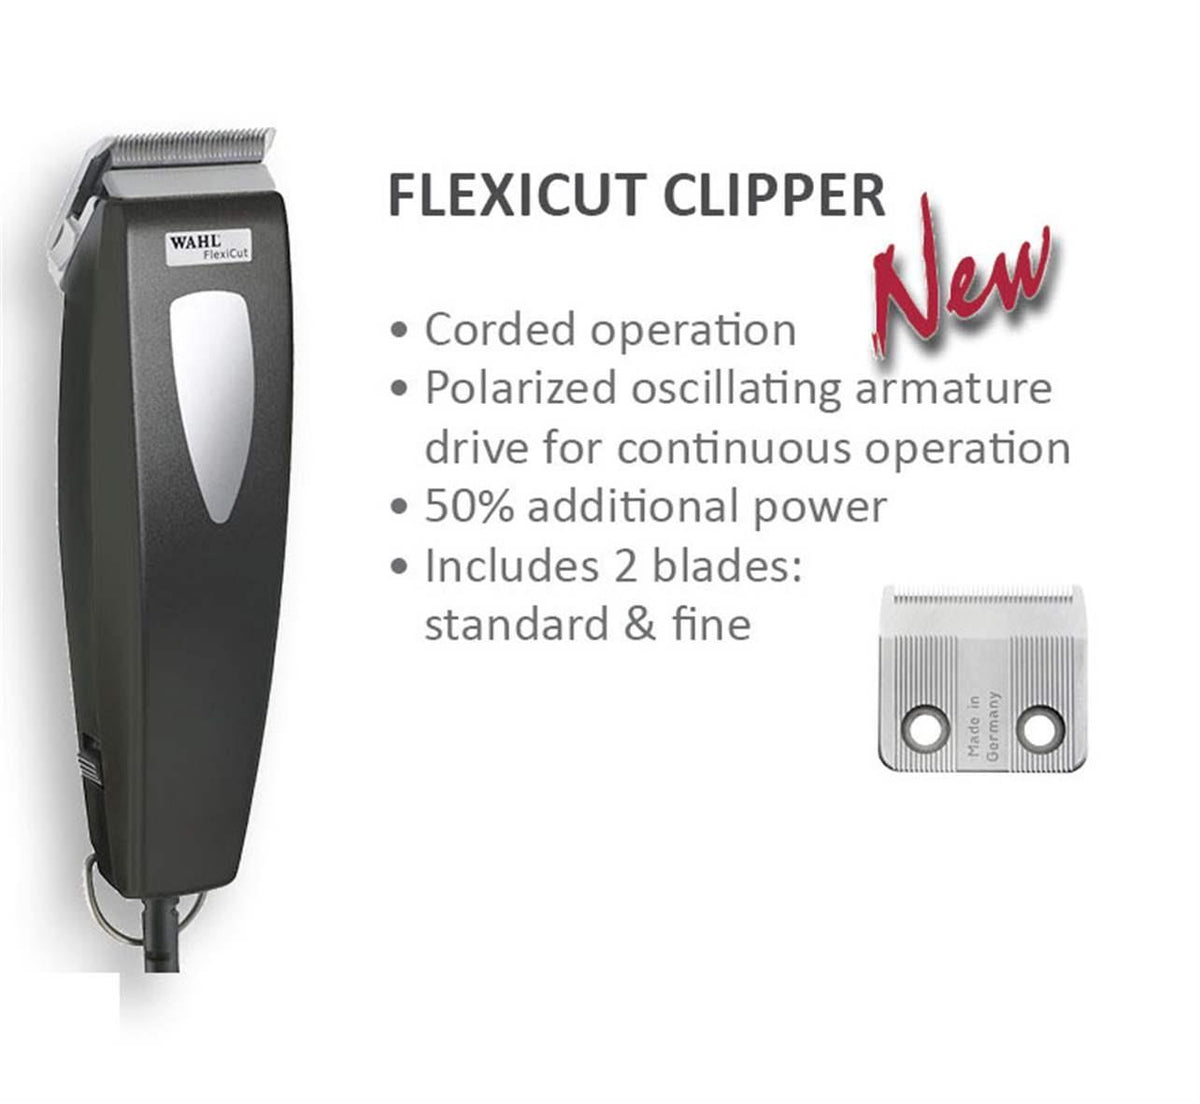 Wahl Flexicut Clipper